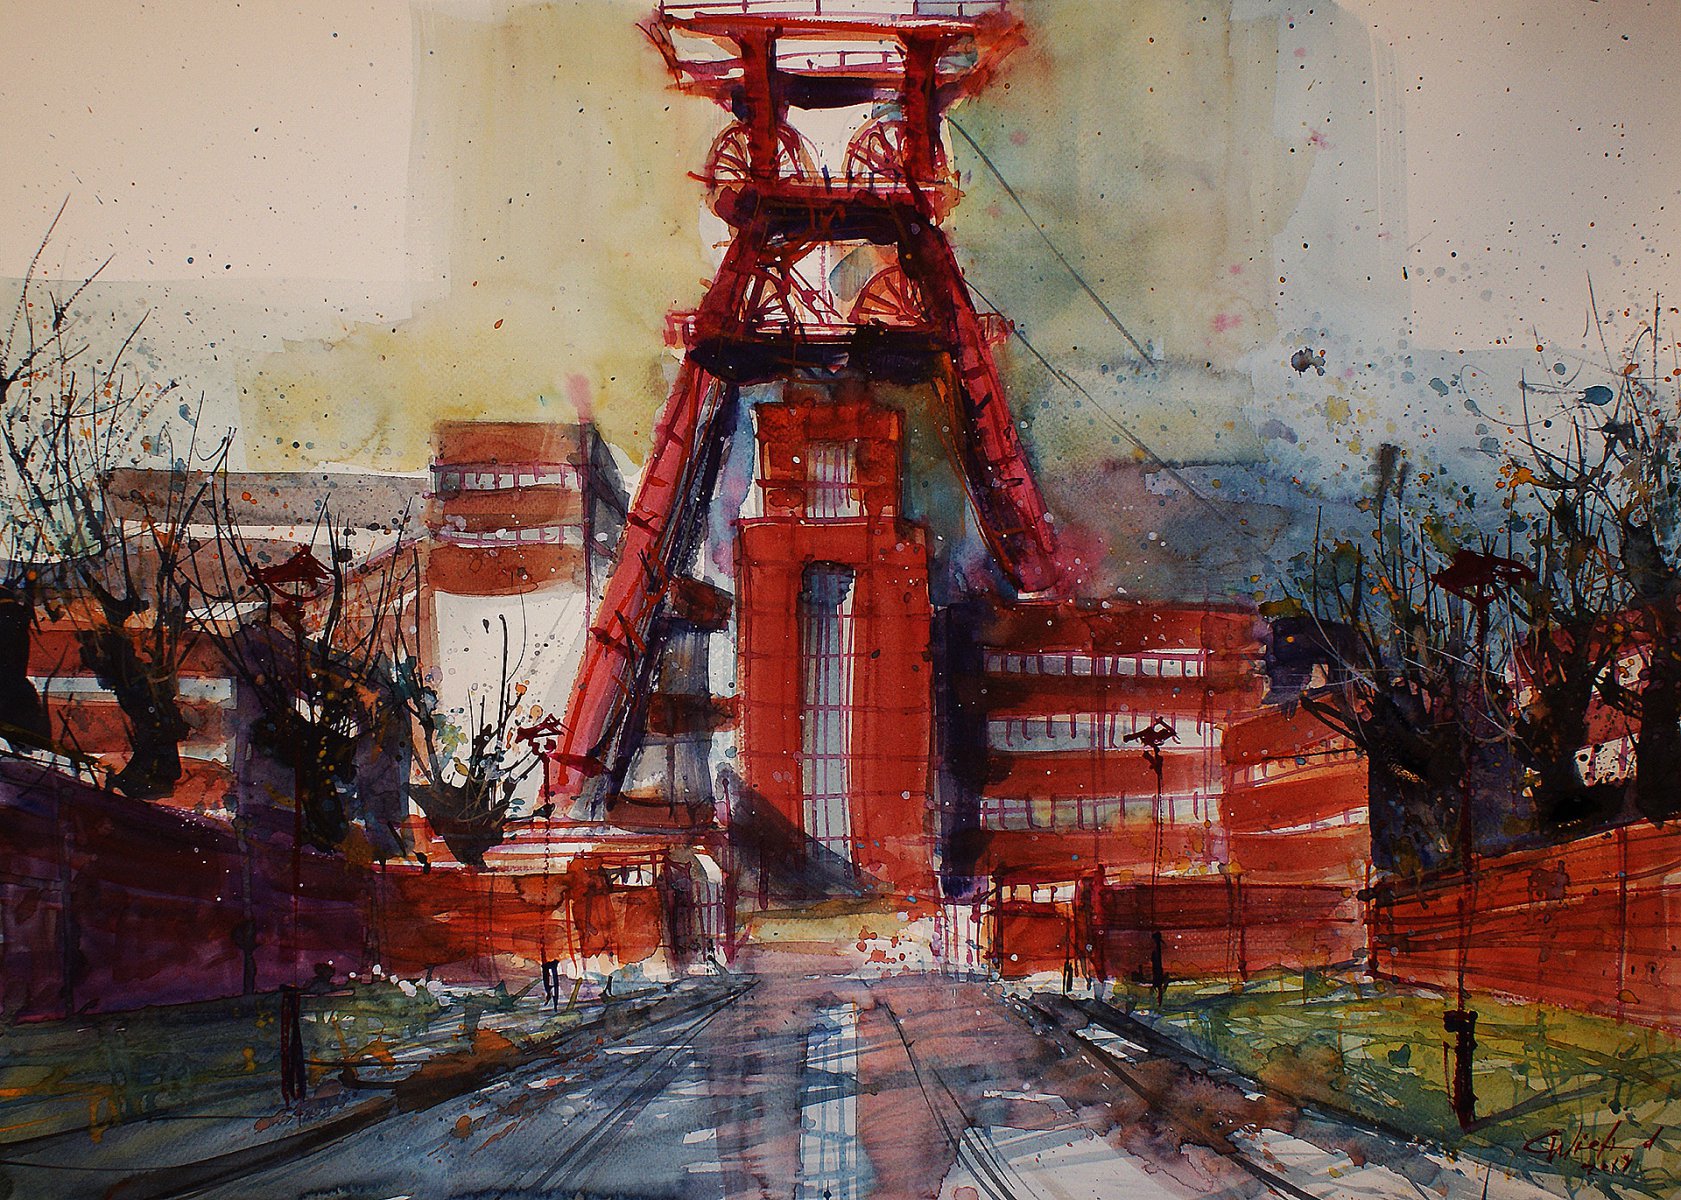 “Rainy day at Zollverein” - Carsten Wieland